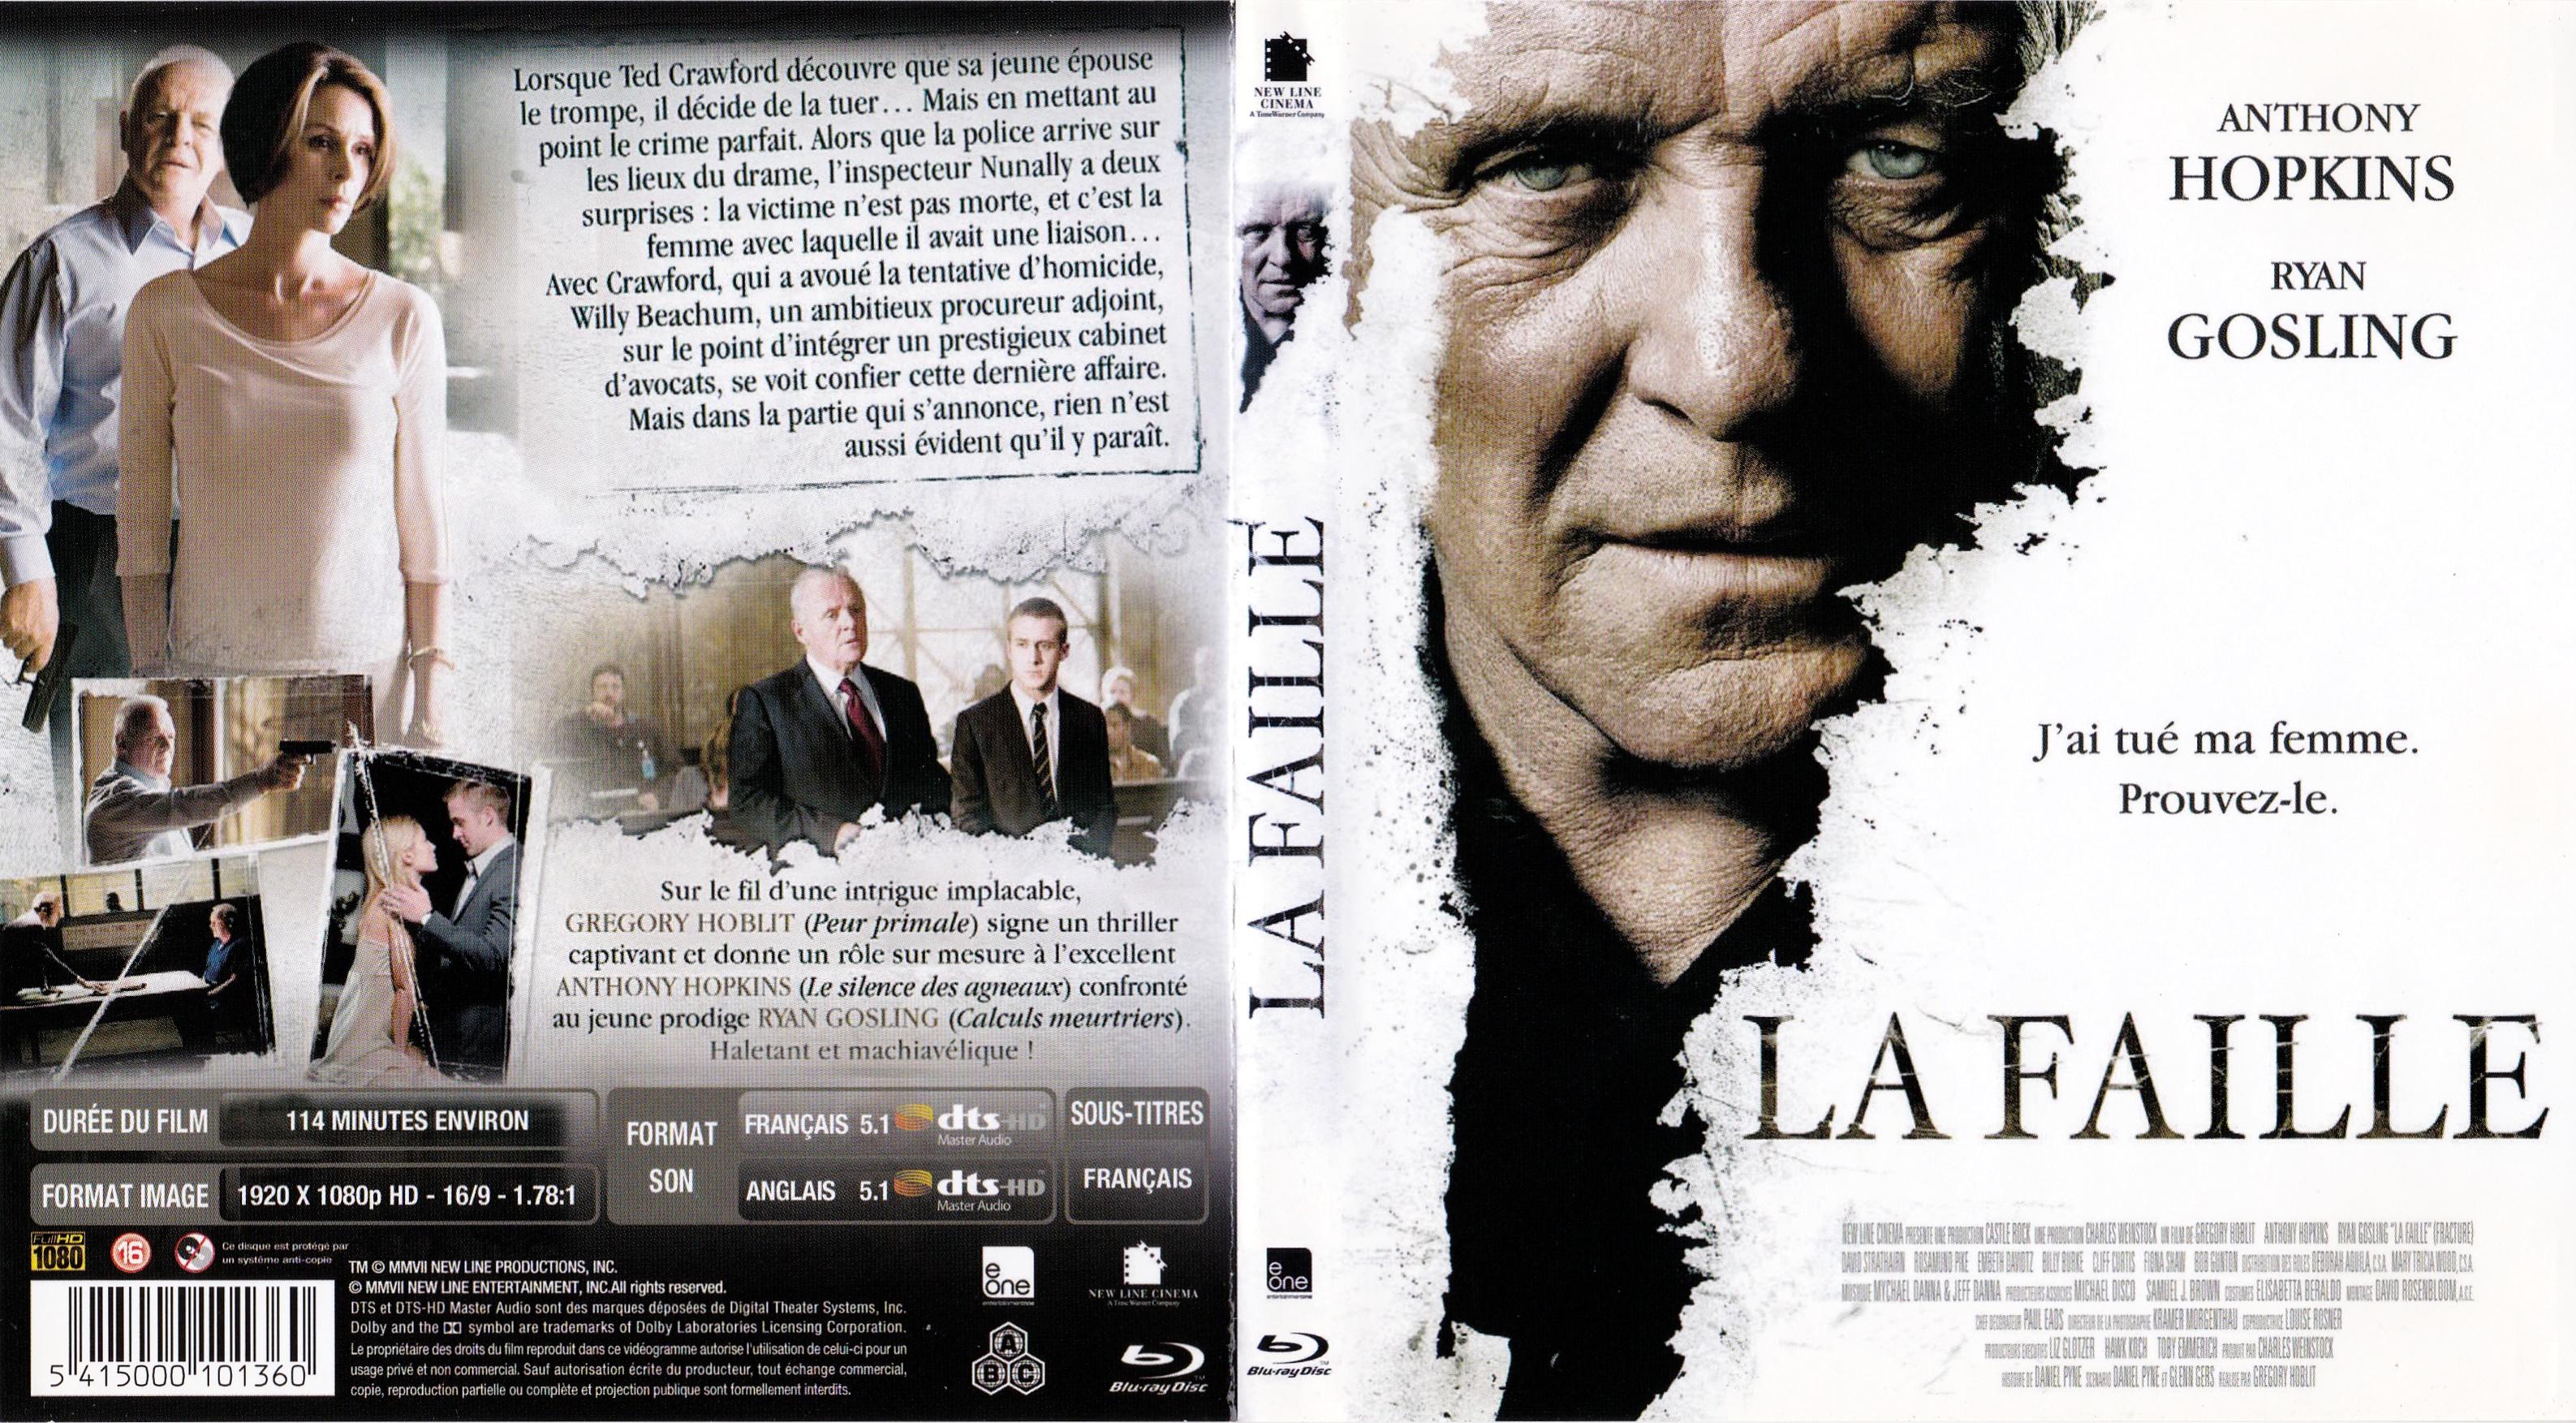 Jaquette DVD La faille (BLU-RAY) v2